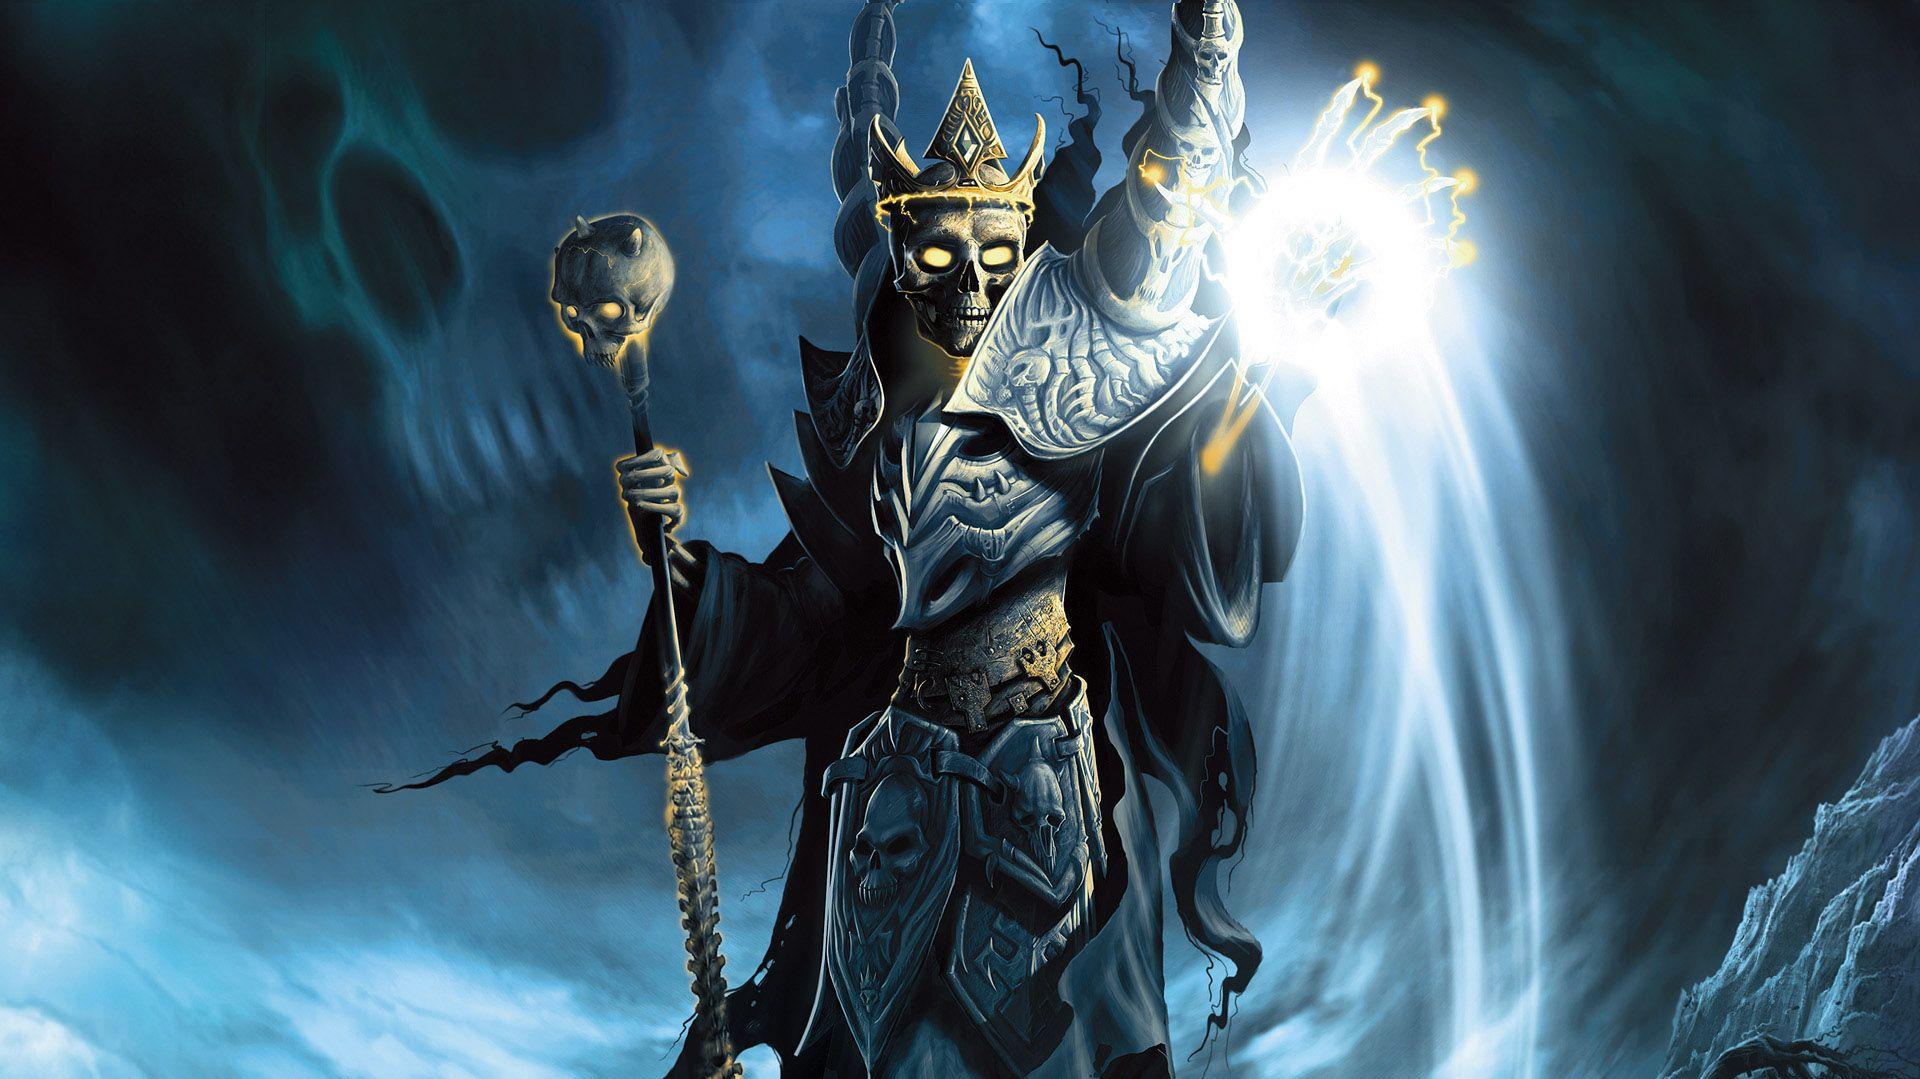 Demon Evil Fantasy Paladino Wizard Wallpaper   Resolution